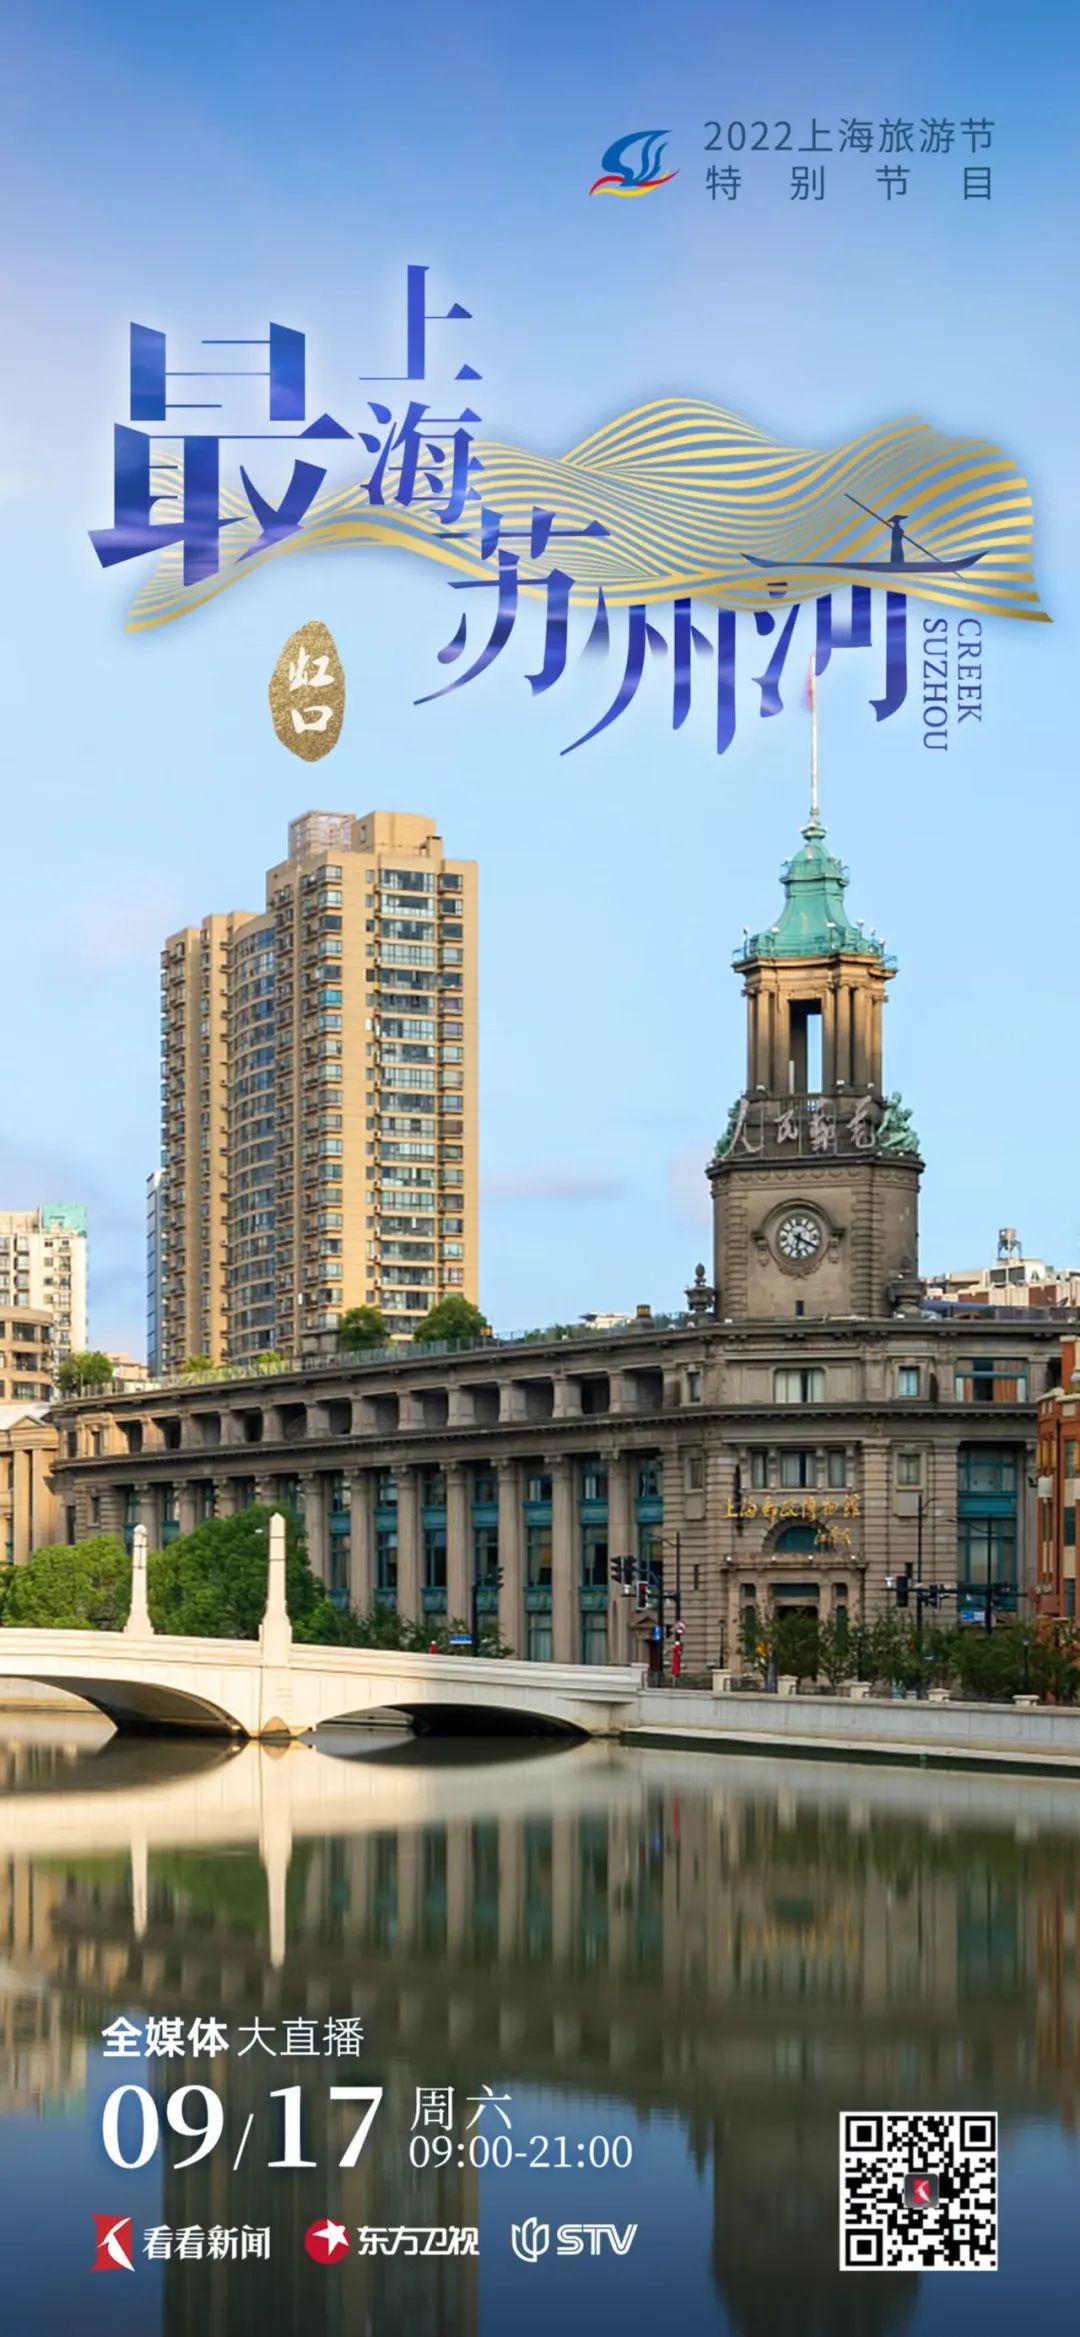 详情 - 上海旅游攻略 -上海市文旅推广网-上海市文化和旅游局 提供专业文化和旅游及会展信息资讯